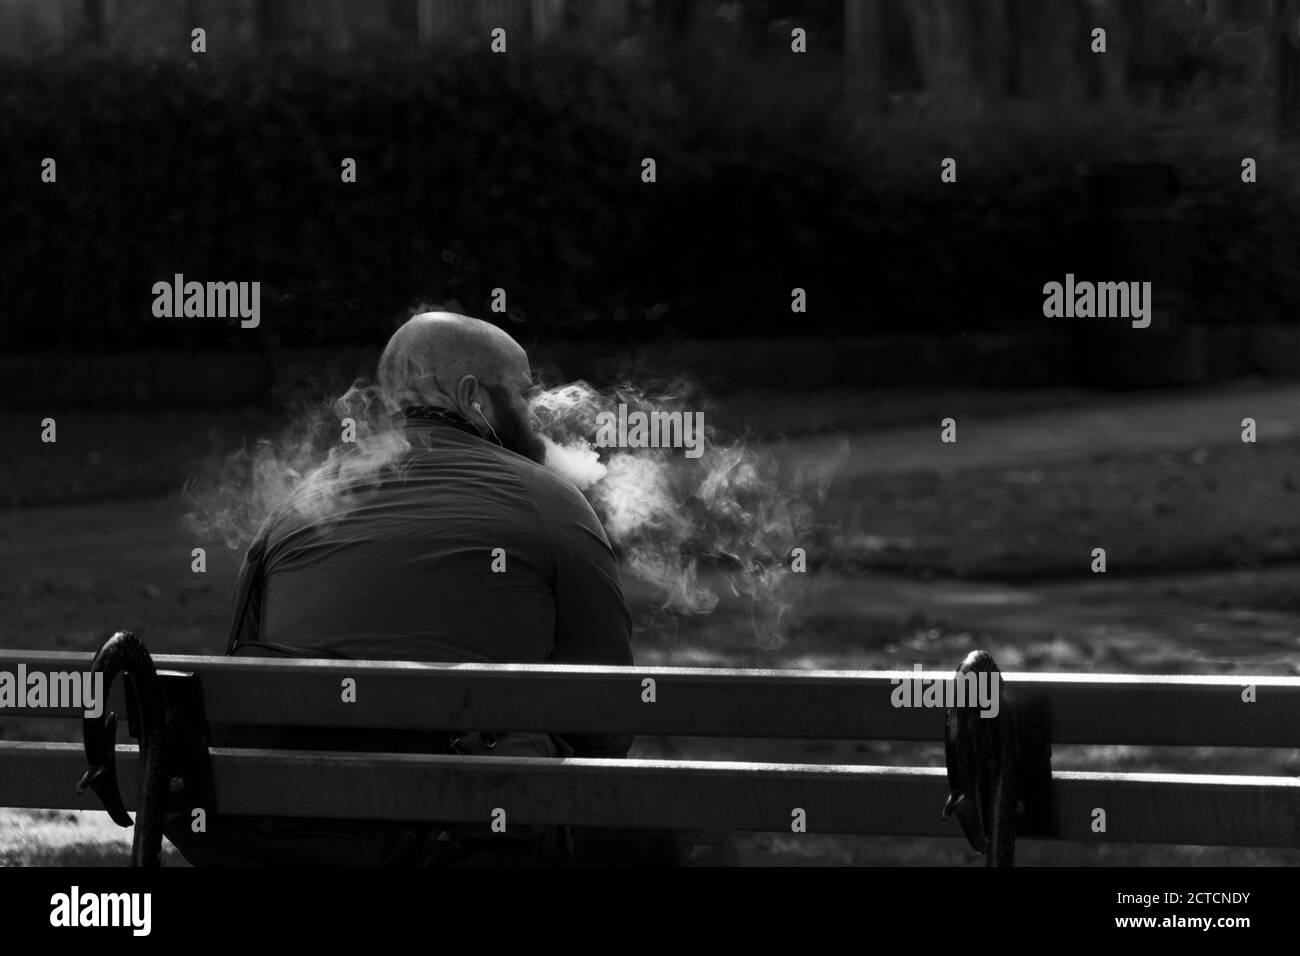 Un gars s'est assis sur un banc de parc en bois de vapotage et de puffrage d'un nuage de fumée, Harrogate, North Yorkshire, Angleterre, Royaume-Uni. Banque D'Images